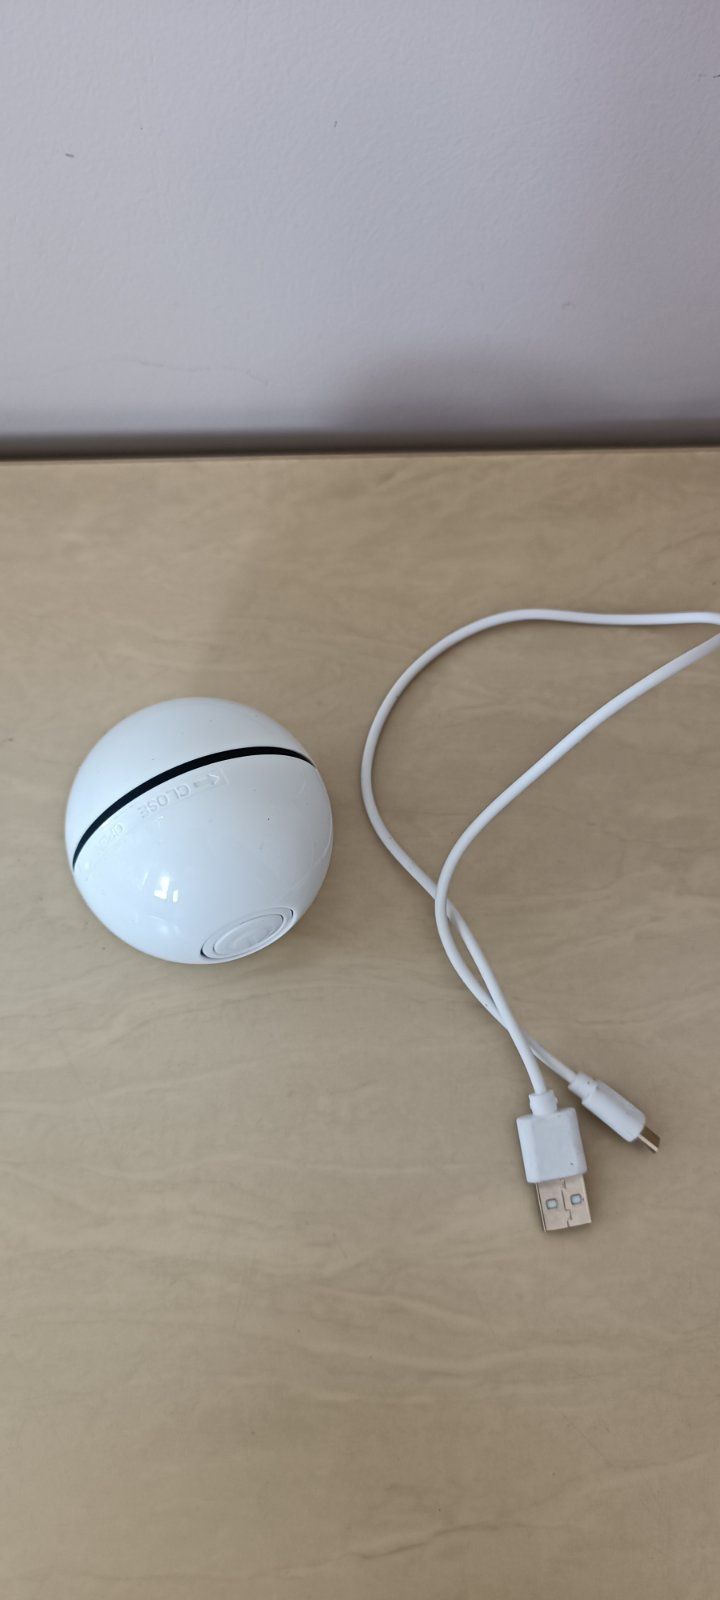 Іграшка для кішки USB smart м'яч-кулька з LED підсвічуванням